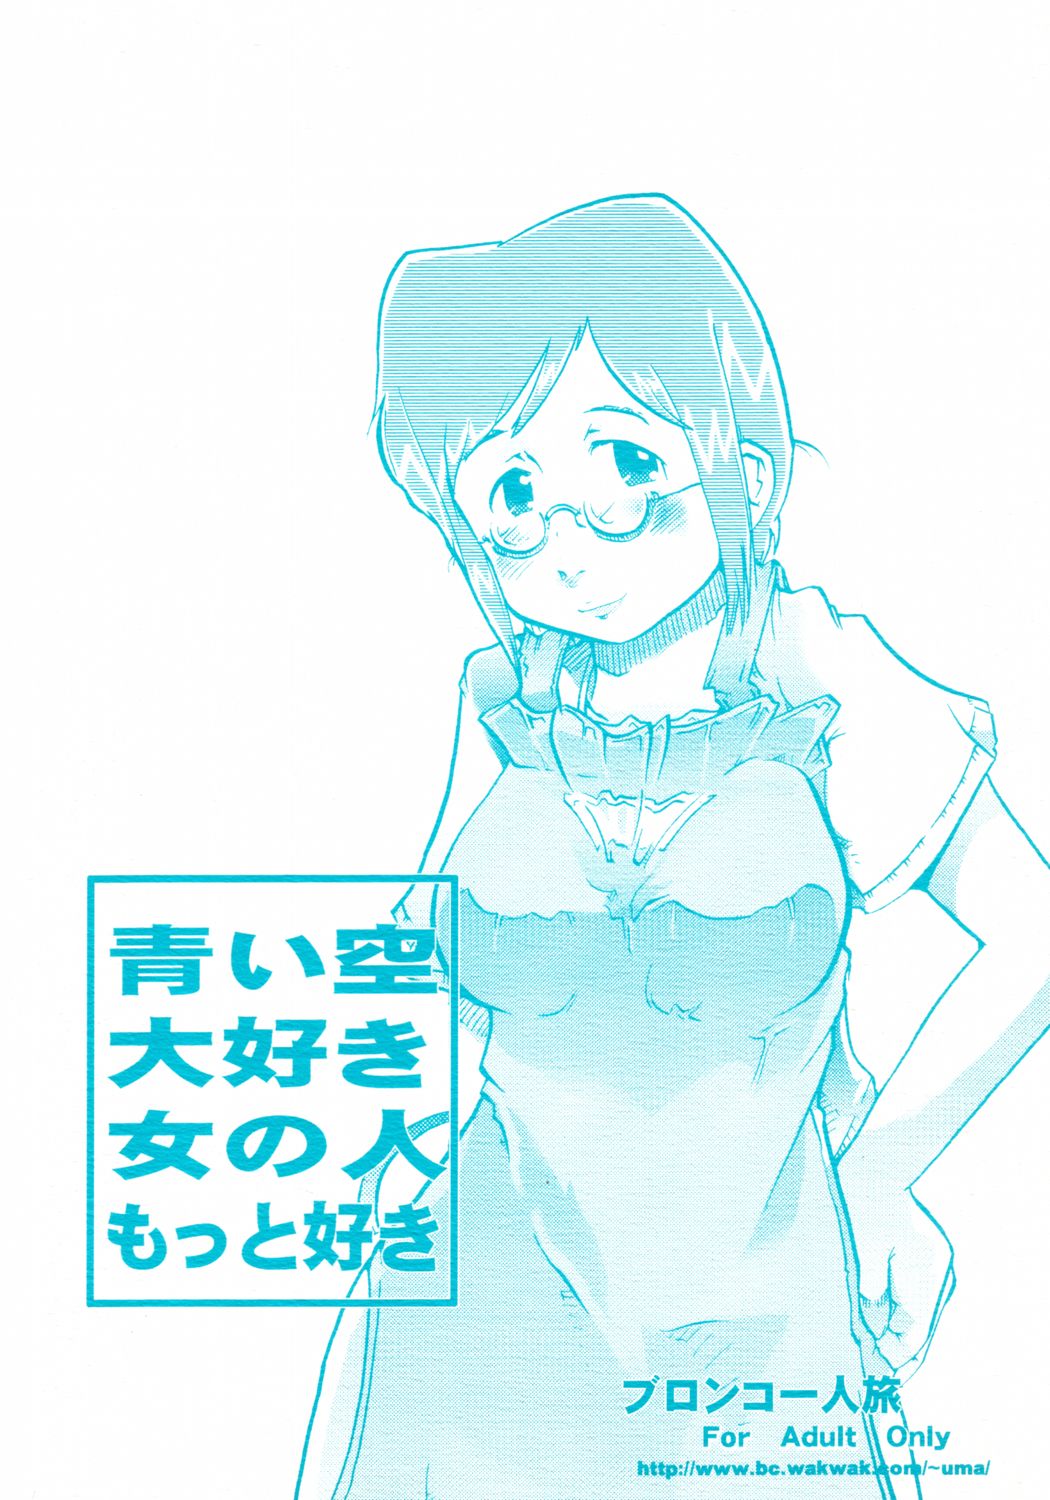 [Bronco Hitoritabi (Uchi-Uchi Keyaki)] Aoi Sora Daisuki Onnanohito Motto Daisuki (Original) [ブロンコ一人旅 (内々けやき)] 青い空大好き女の人もっと好き (オリジナル)